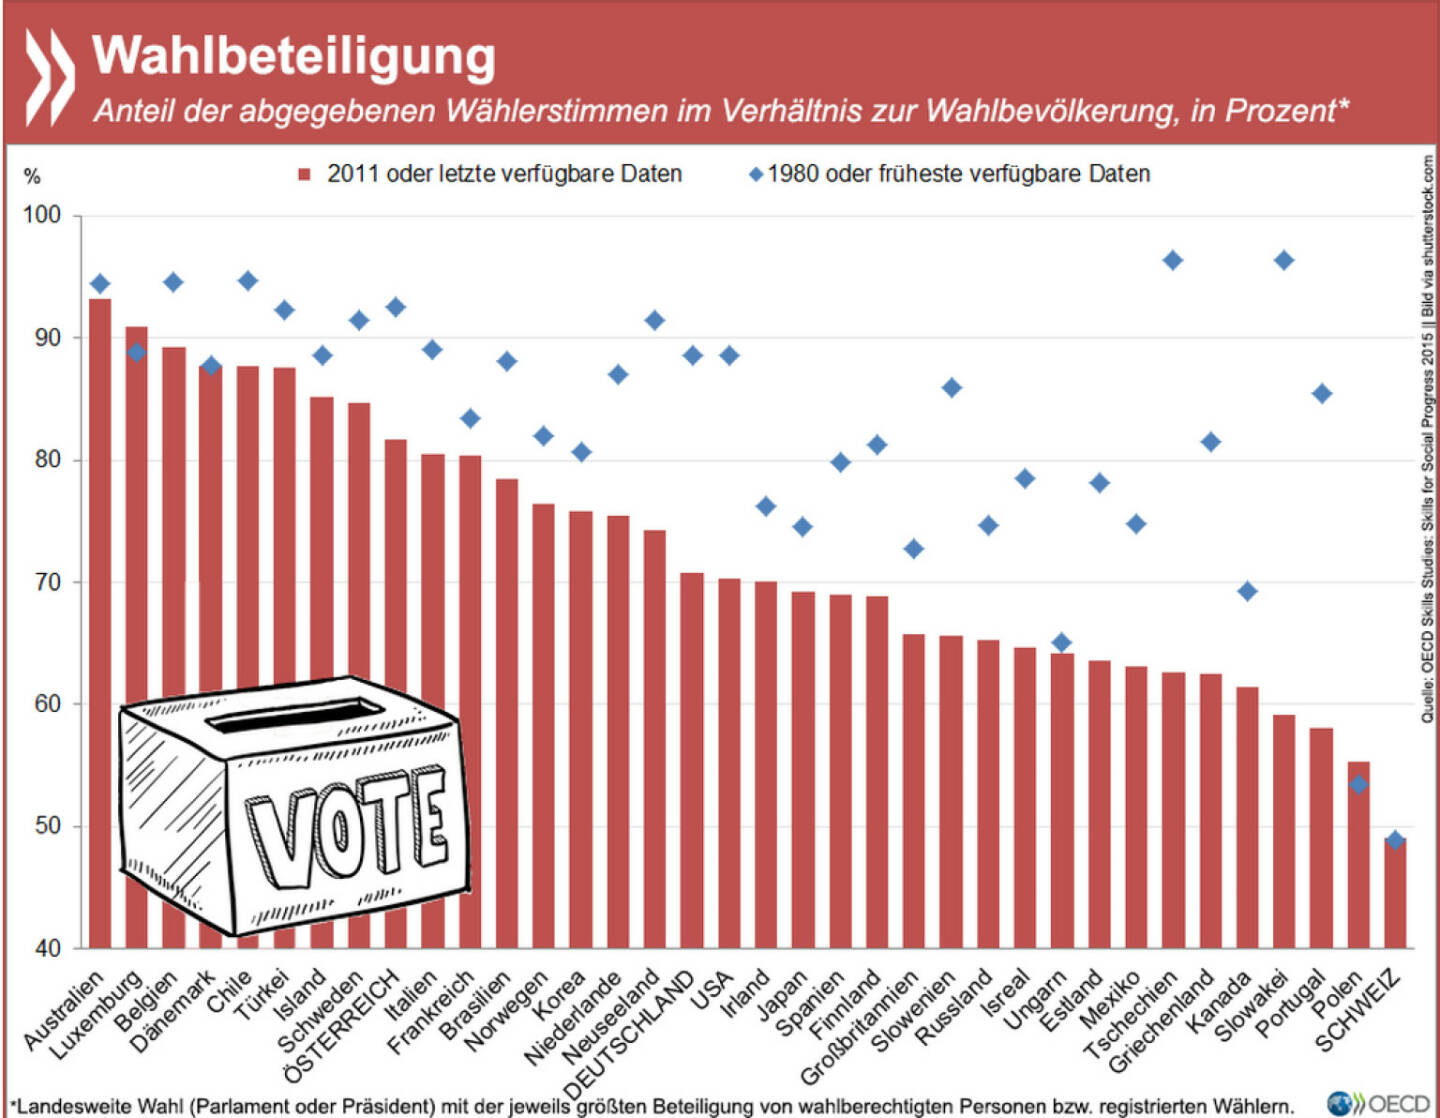 Keine Wahl: In fast allen OECD-Ländern ist die Wahlbeteiligung in den letzten Jahrzehnten rückläufig. In Deutschland gaben Anfang der 1980er Jahre noch 89 Prozent der Berechtigten ihre Stimme ab. Dreißig Jahre später waren es nur noch 71 Prozent.
Mehr Infos zum Thema Wohlbefinden findet Ihr unter: http://bit.ly/HDXvyS (S. 57ff.)